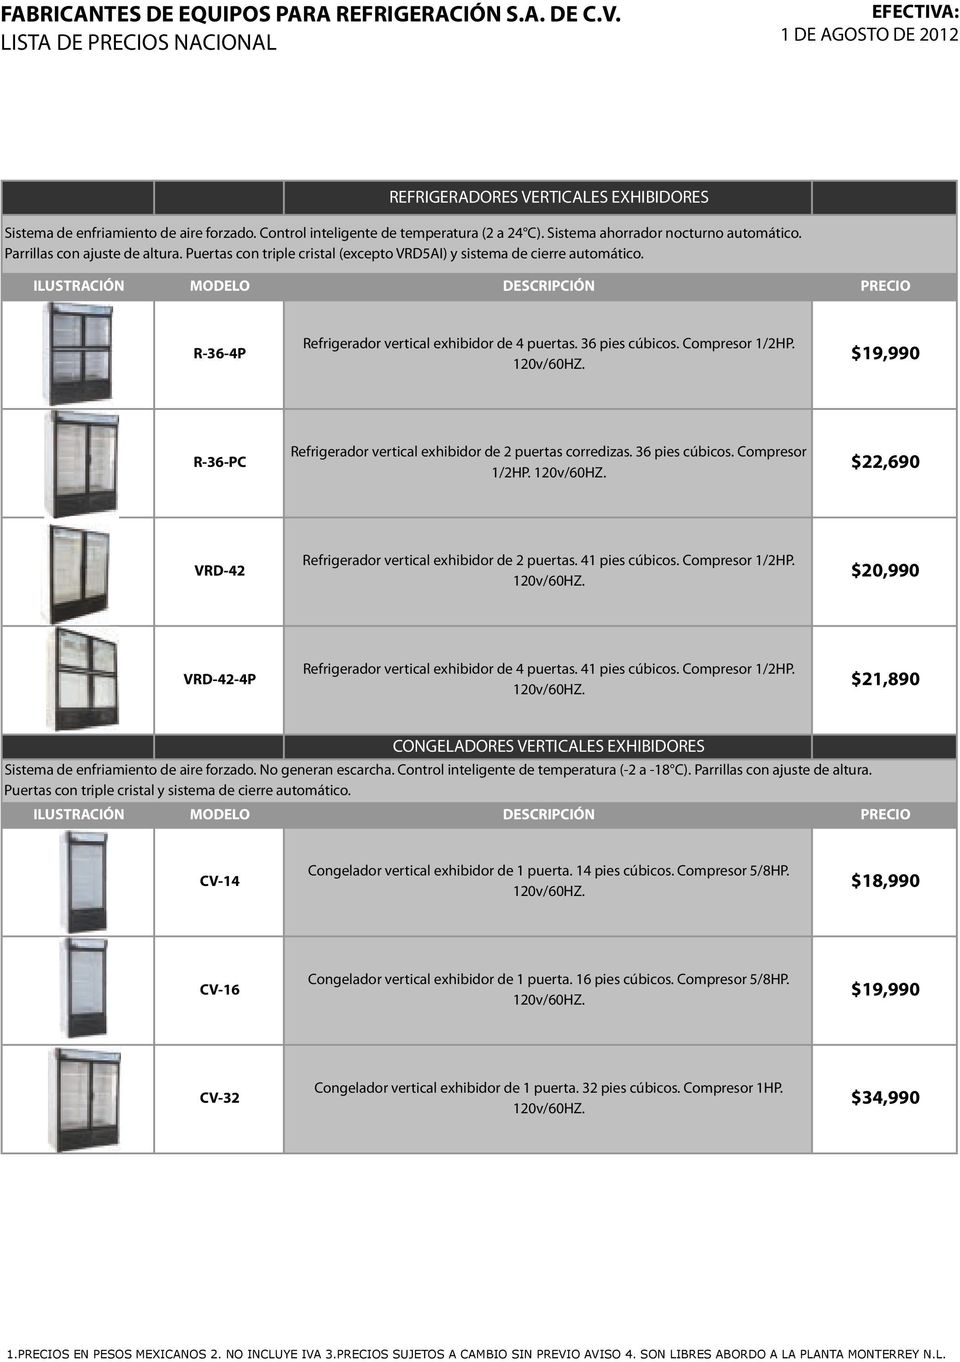 $19,990 R-36-PC Refrigerador vertical exhibidor de 2 puertas corredizas. 36 pies cúbicos. Compresor 1/2HP. $22,690 VRD-42 Refrigerador vertical exhibidor de 2 puertas. 41 pies cúbicos.